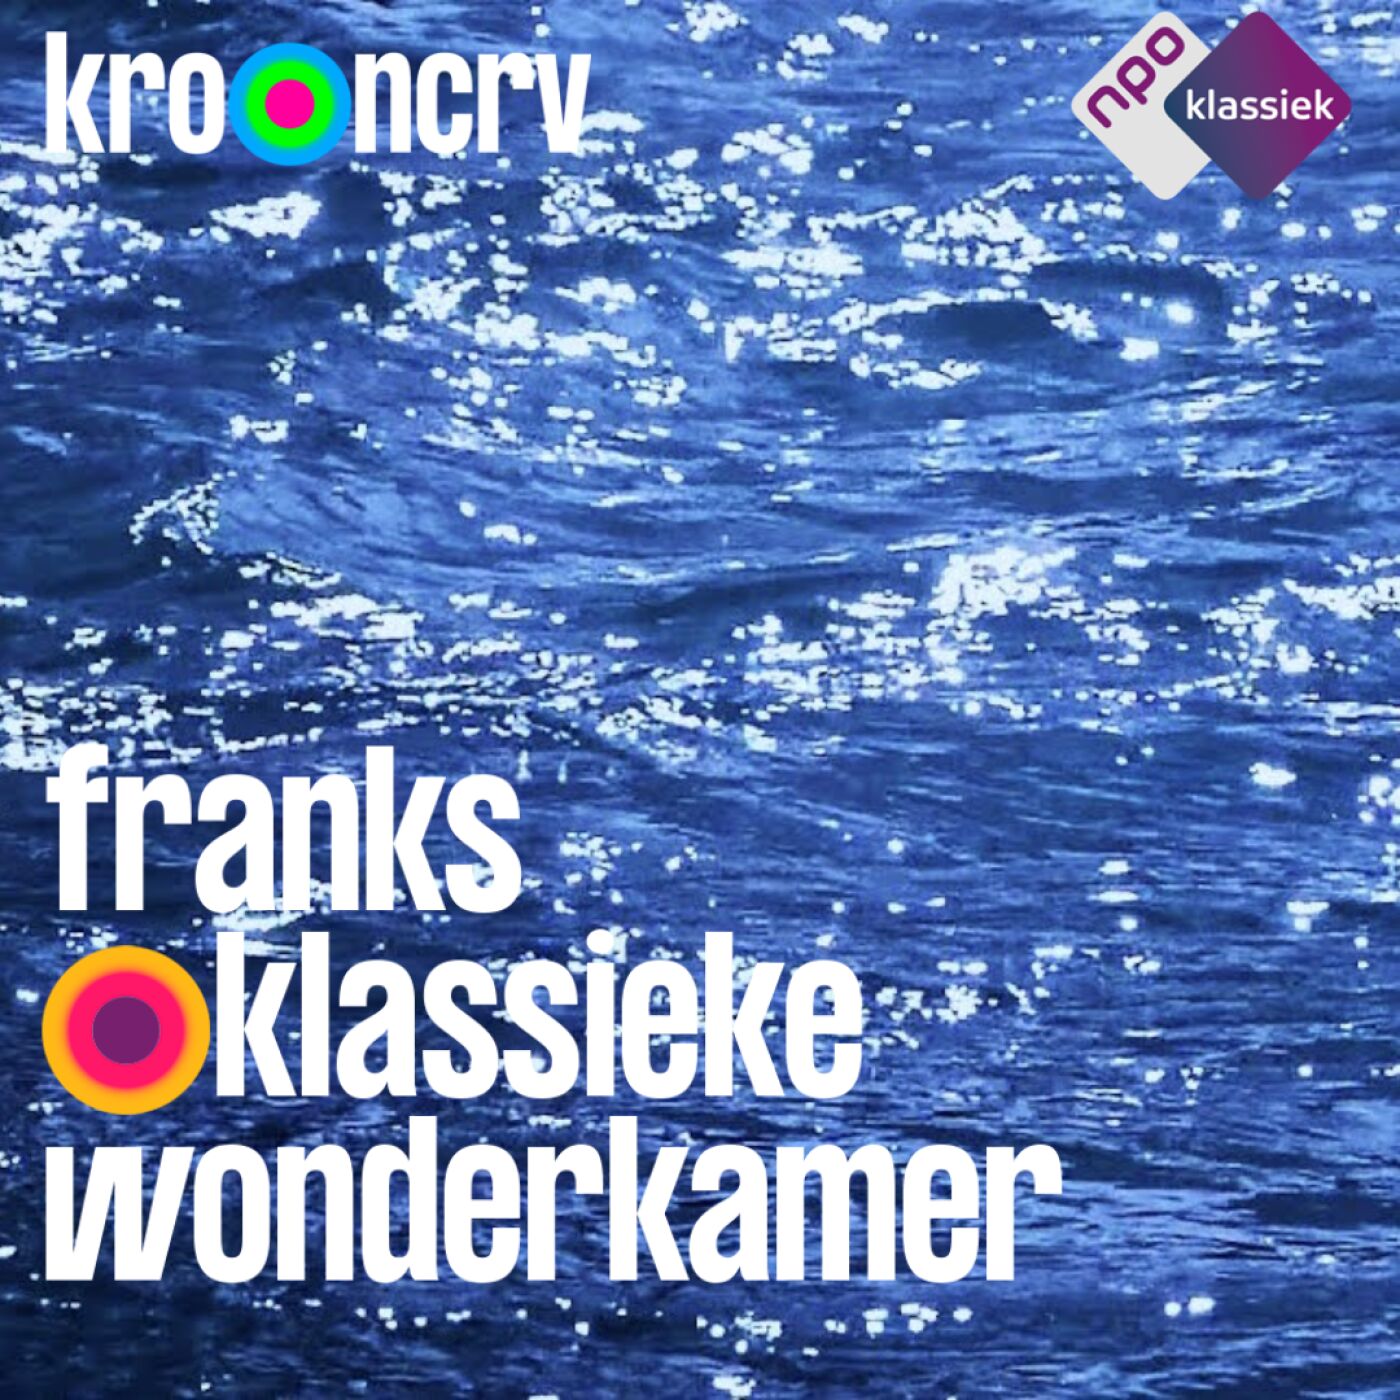 #237 - Franks Klassieke Wonderkamer: ‘Togetherness’